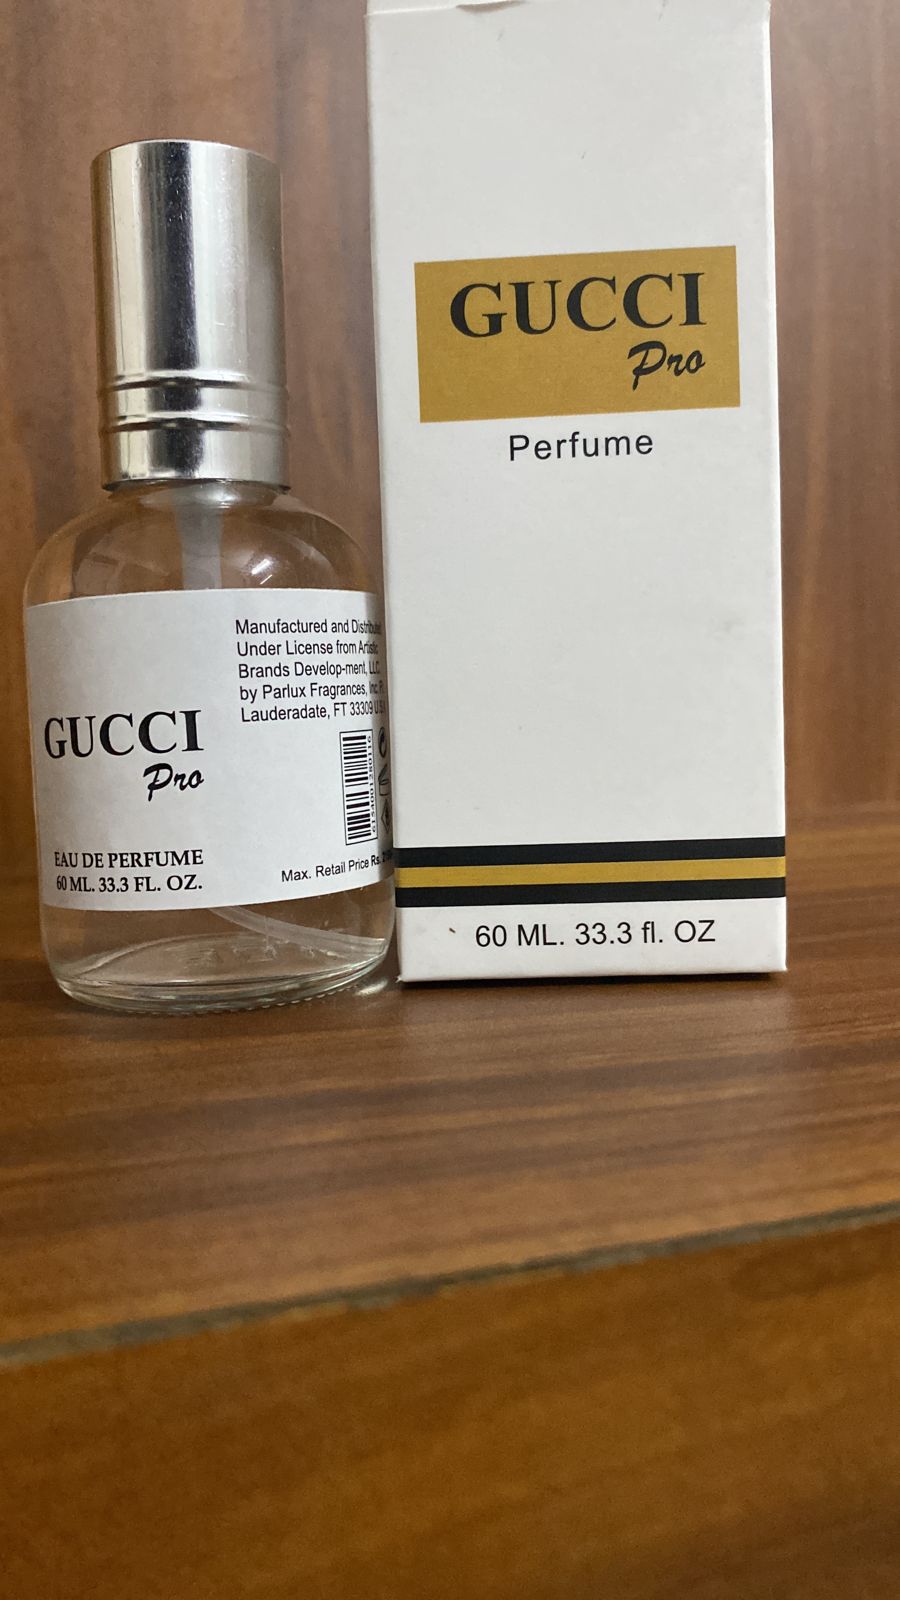 Gucci Pro Perfume